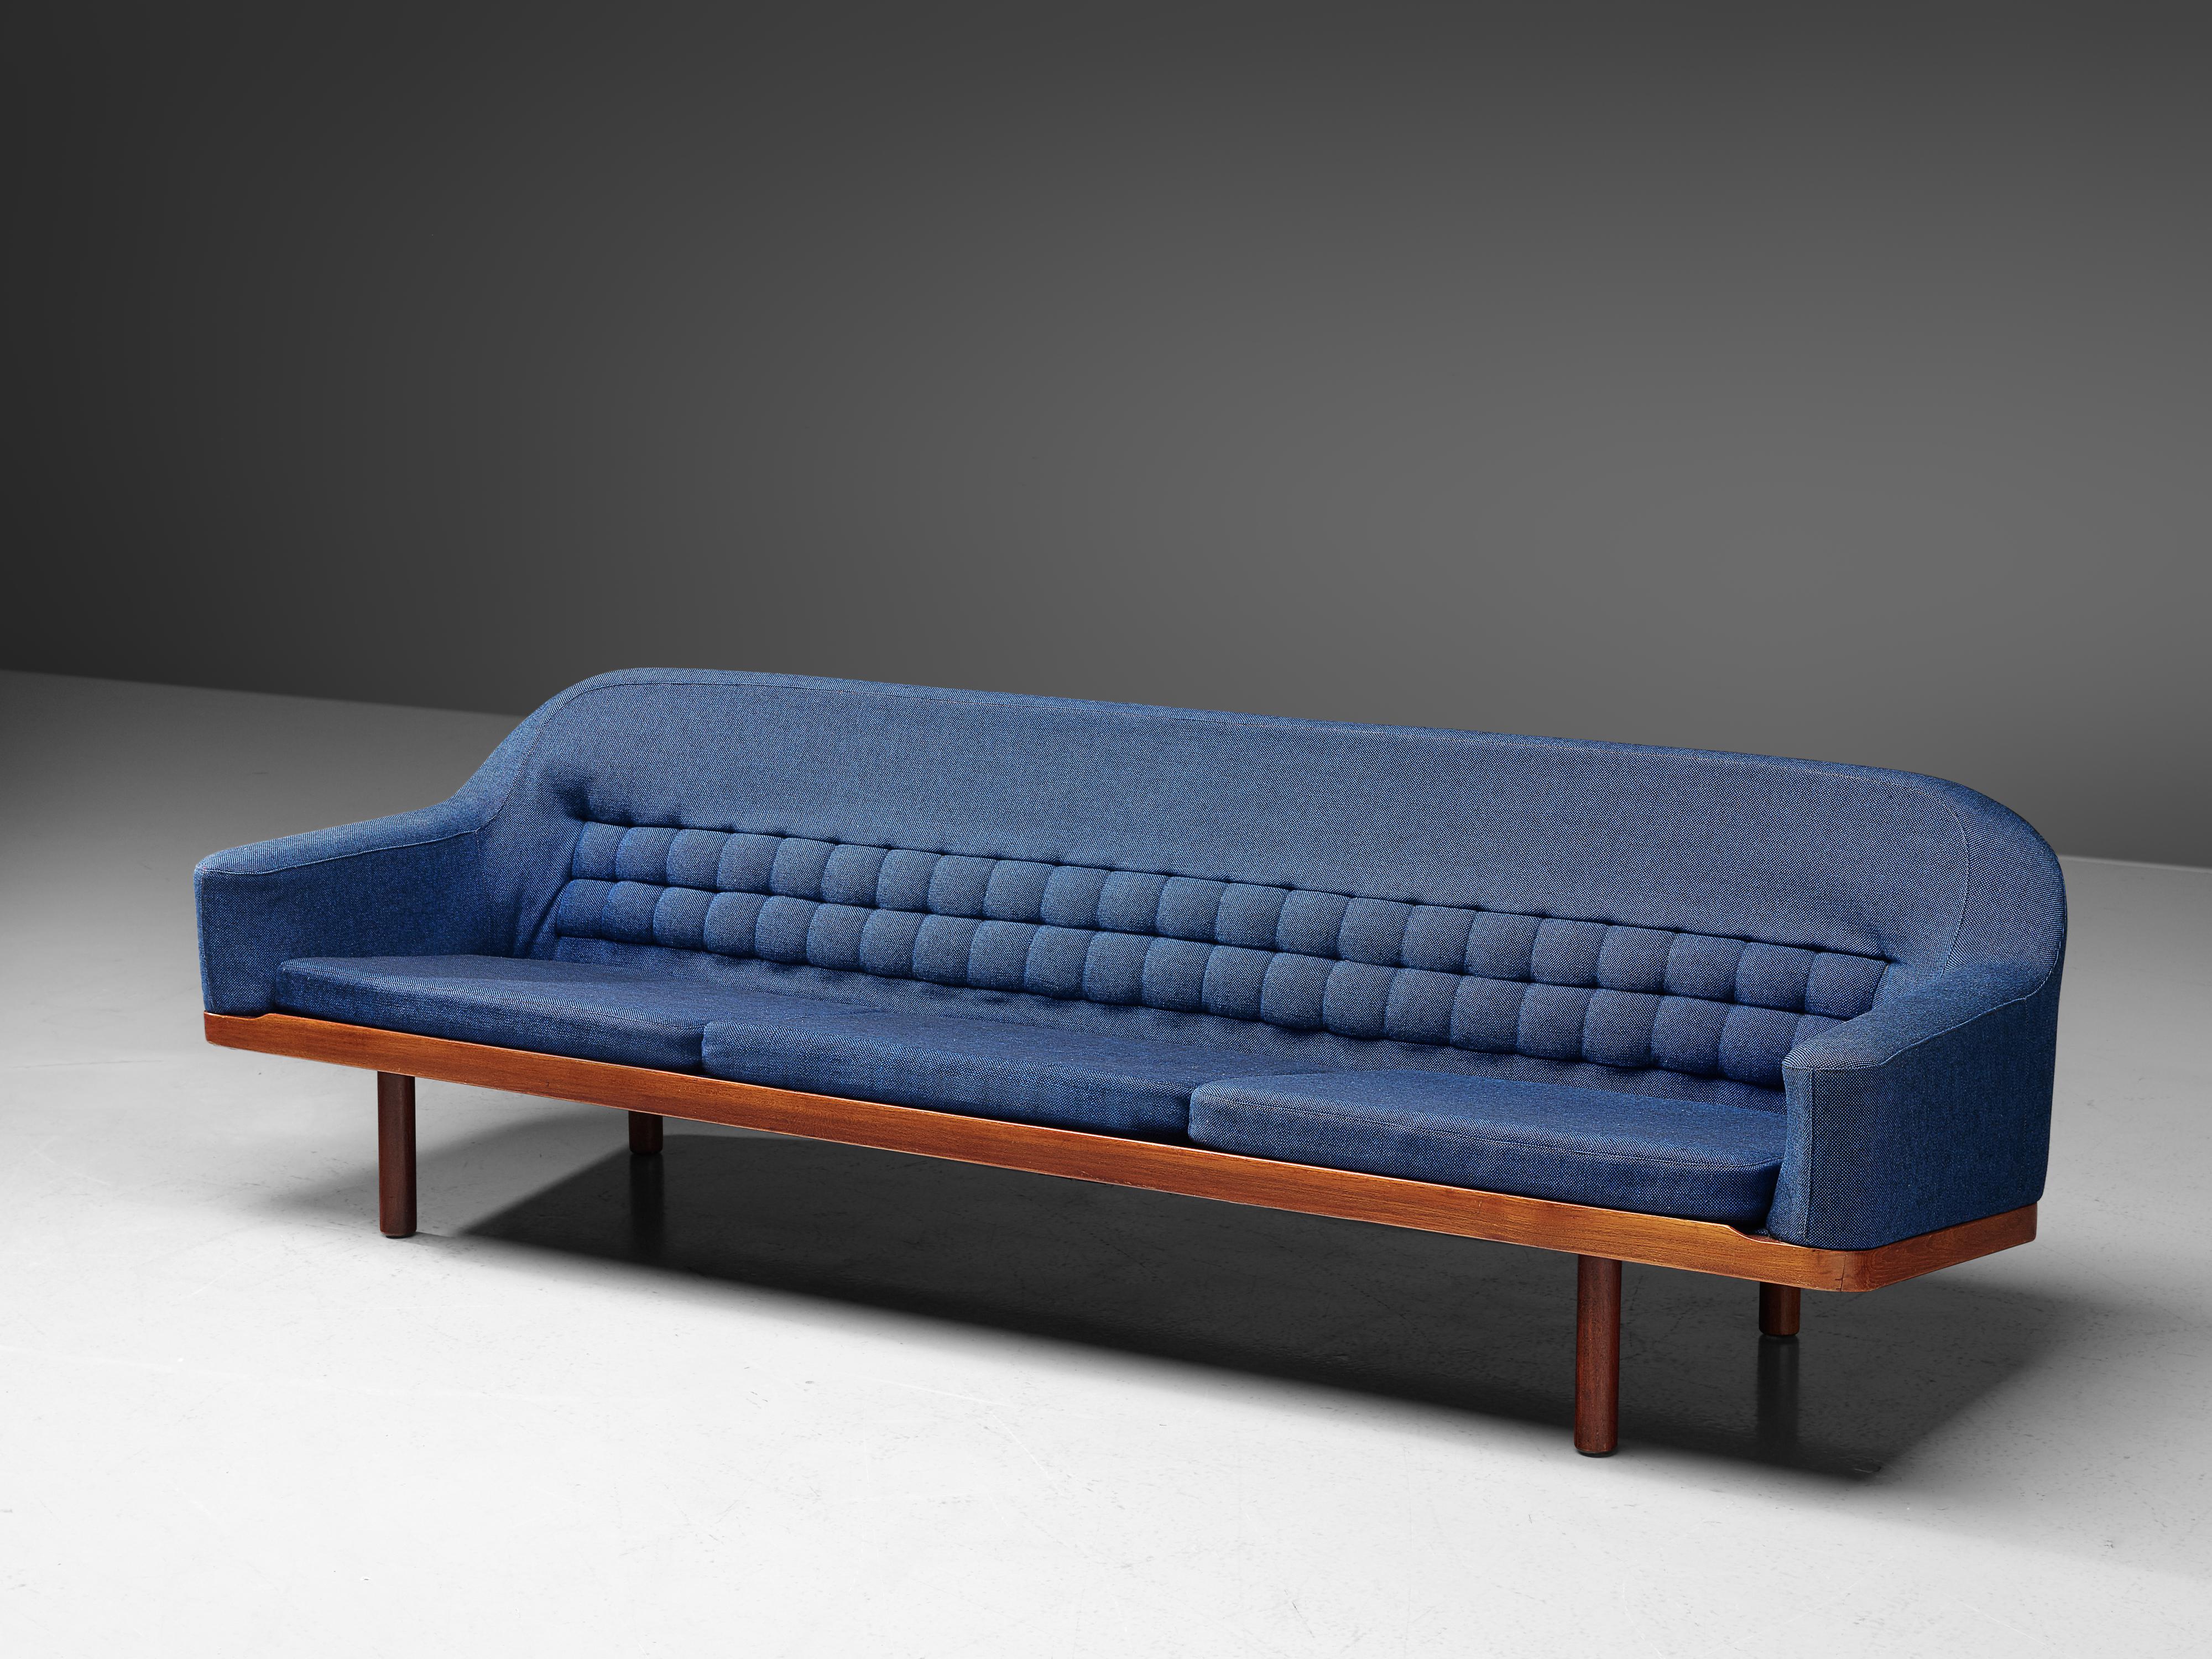 Arne Halvorsen Sofa Model 2010 in Teak and Blue Fabric Upholstery 3